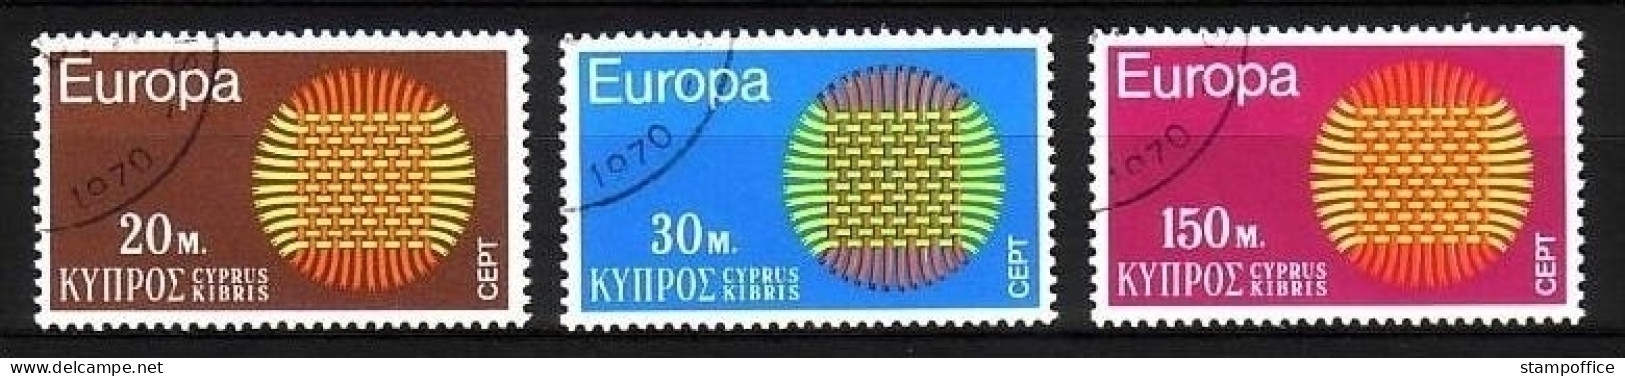 ZYPERN MI-NR. 332-334 GESTEMPELT(USED) EUROPA 1970 SONNENSYMBOL - 1970